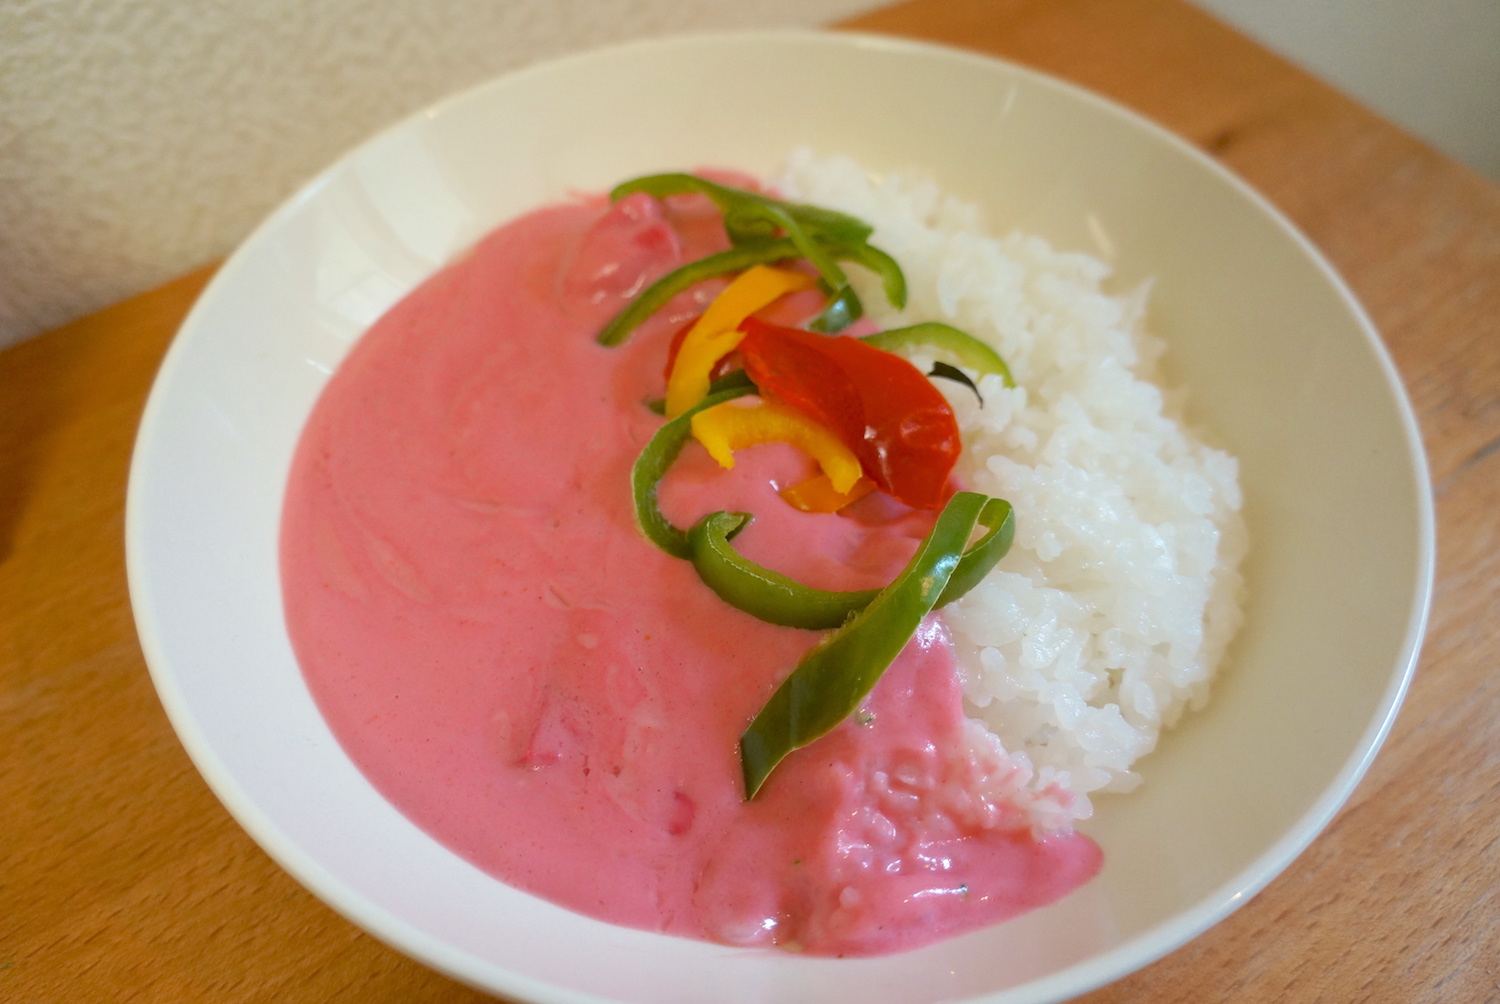 鳥取のお土産 ピンクカレー はインド人もビックリの鮮烈ピンク色 しかも意外なほど美味しくて2度ビックリ 買って応援 Pouch ポーチ